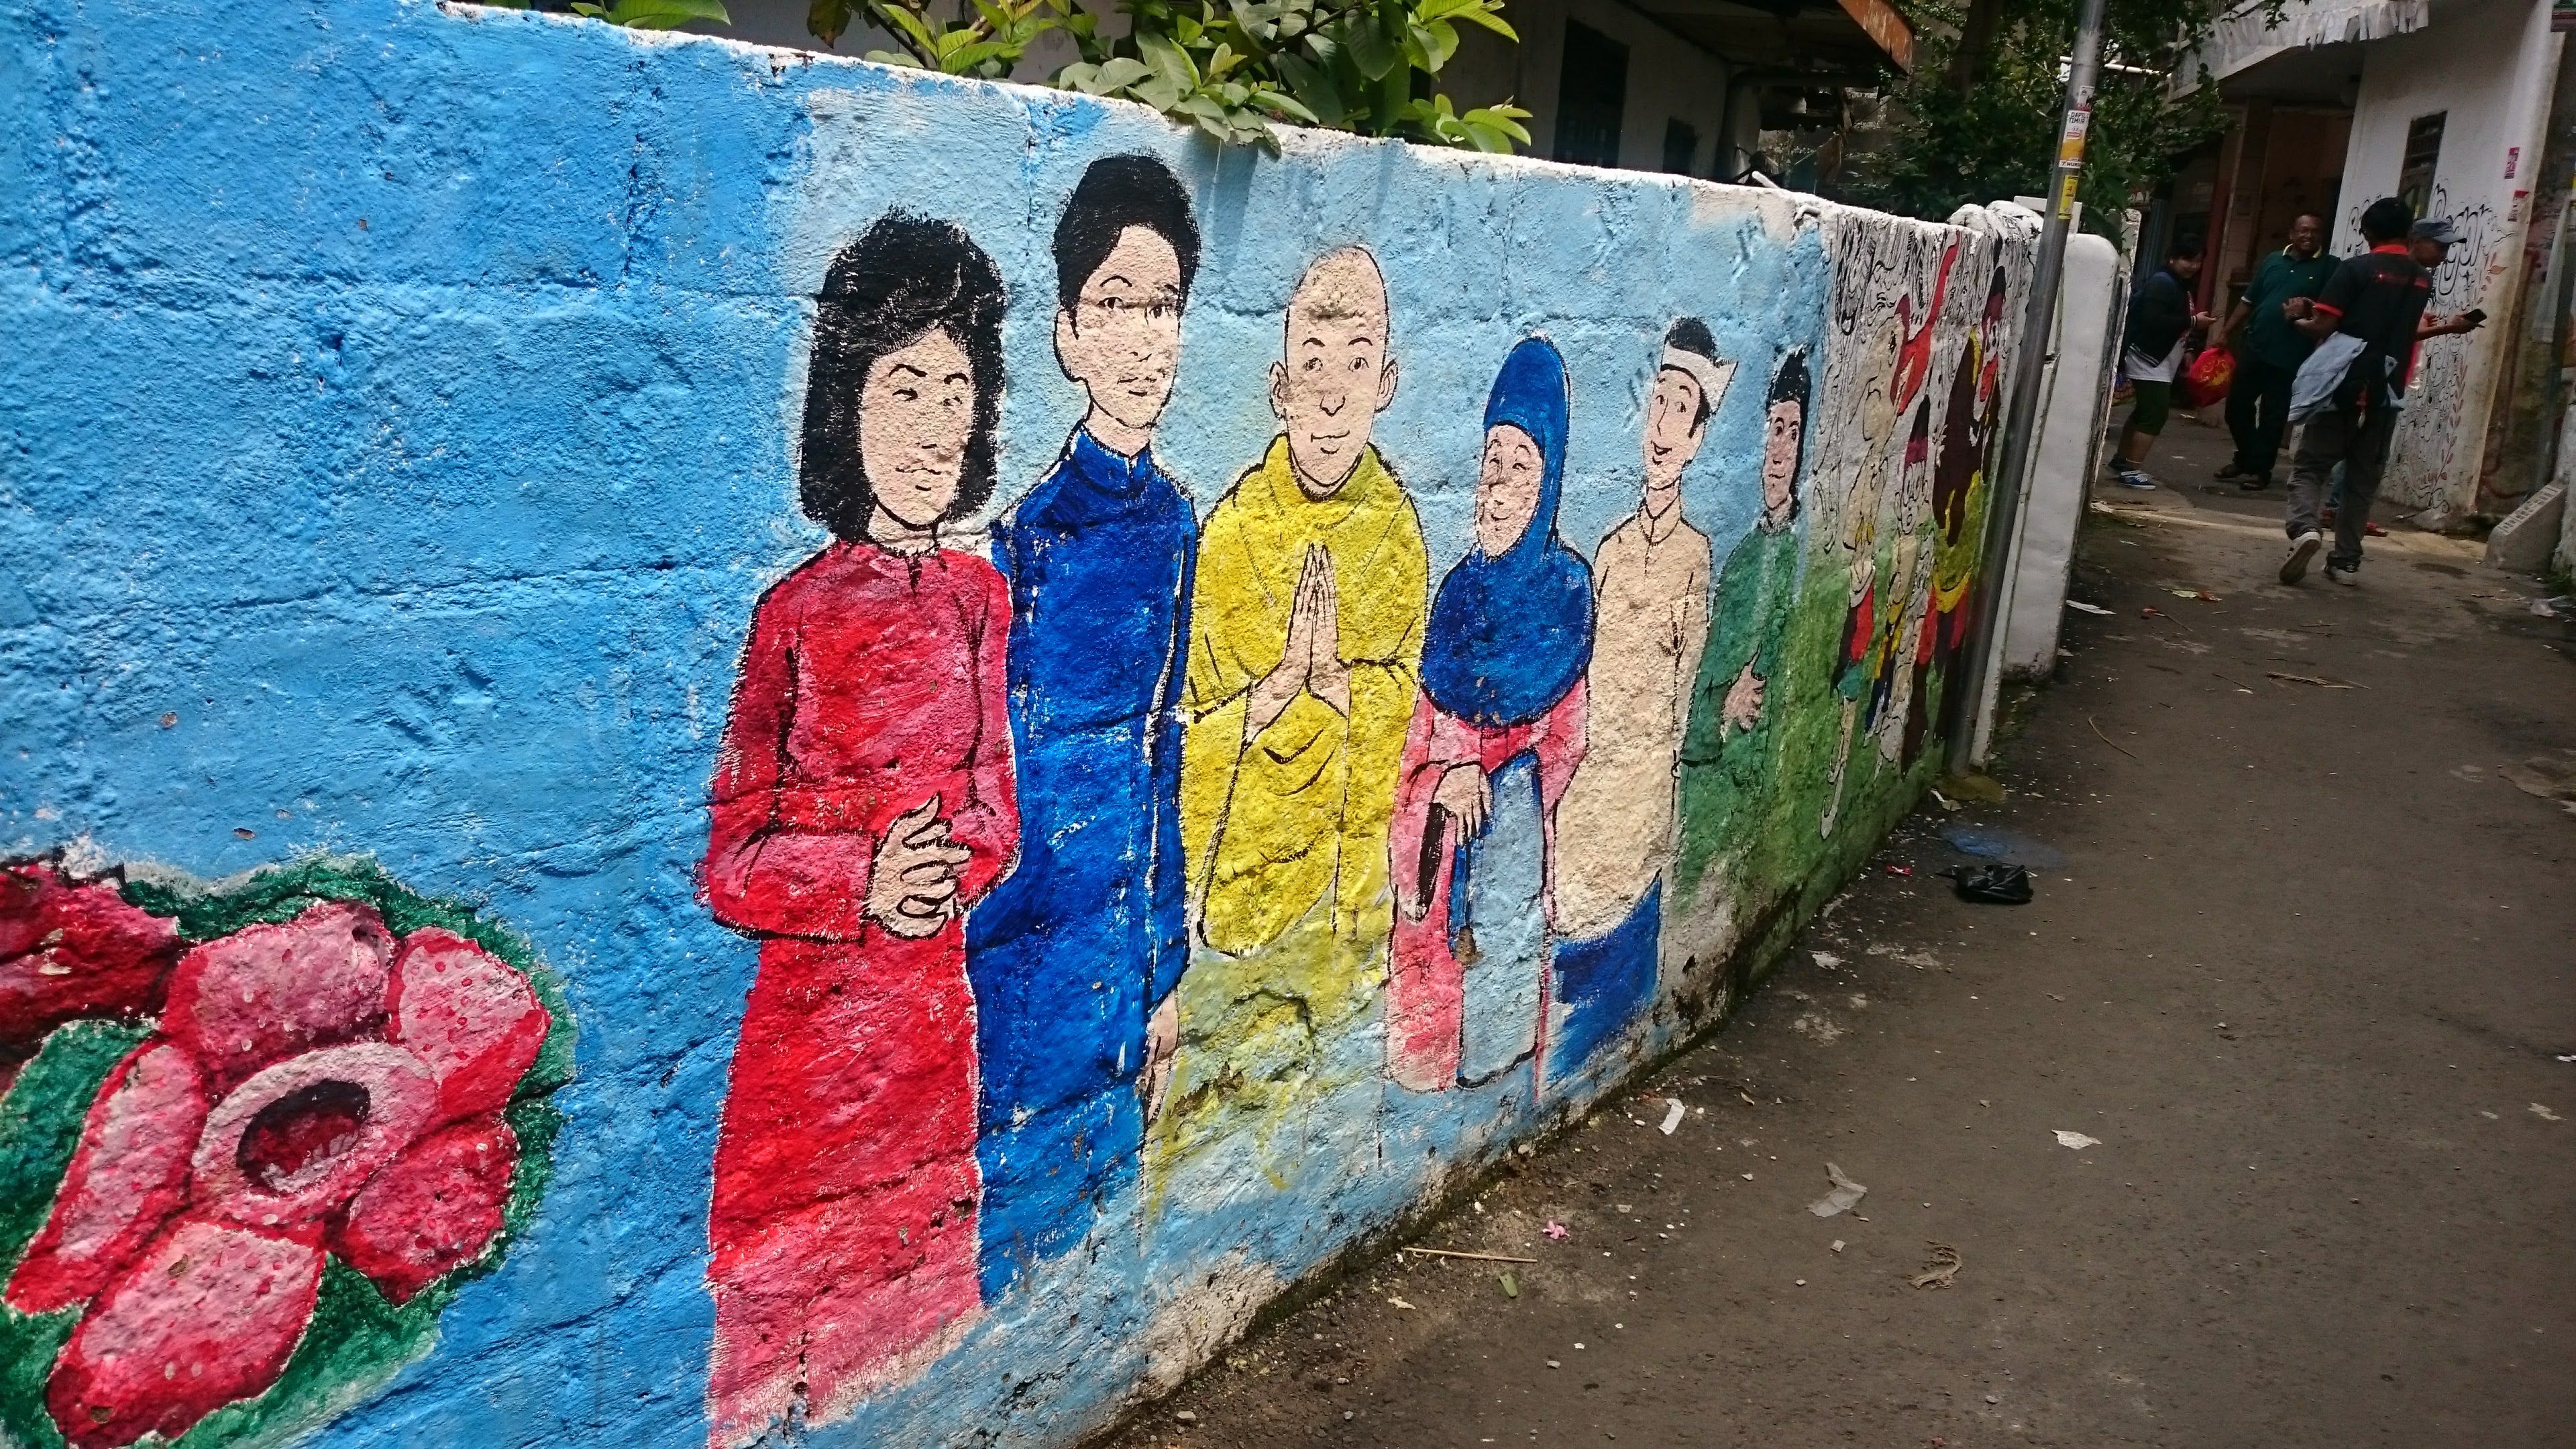 Mural dinding yang menyimbolkan harmoni keberagaman Pulo Geulis.